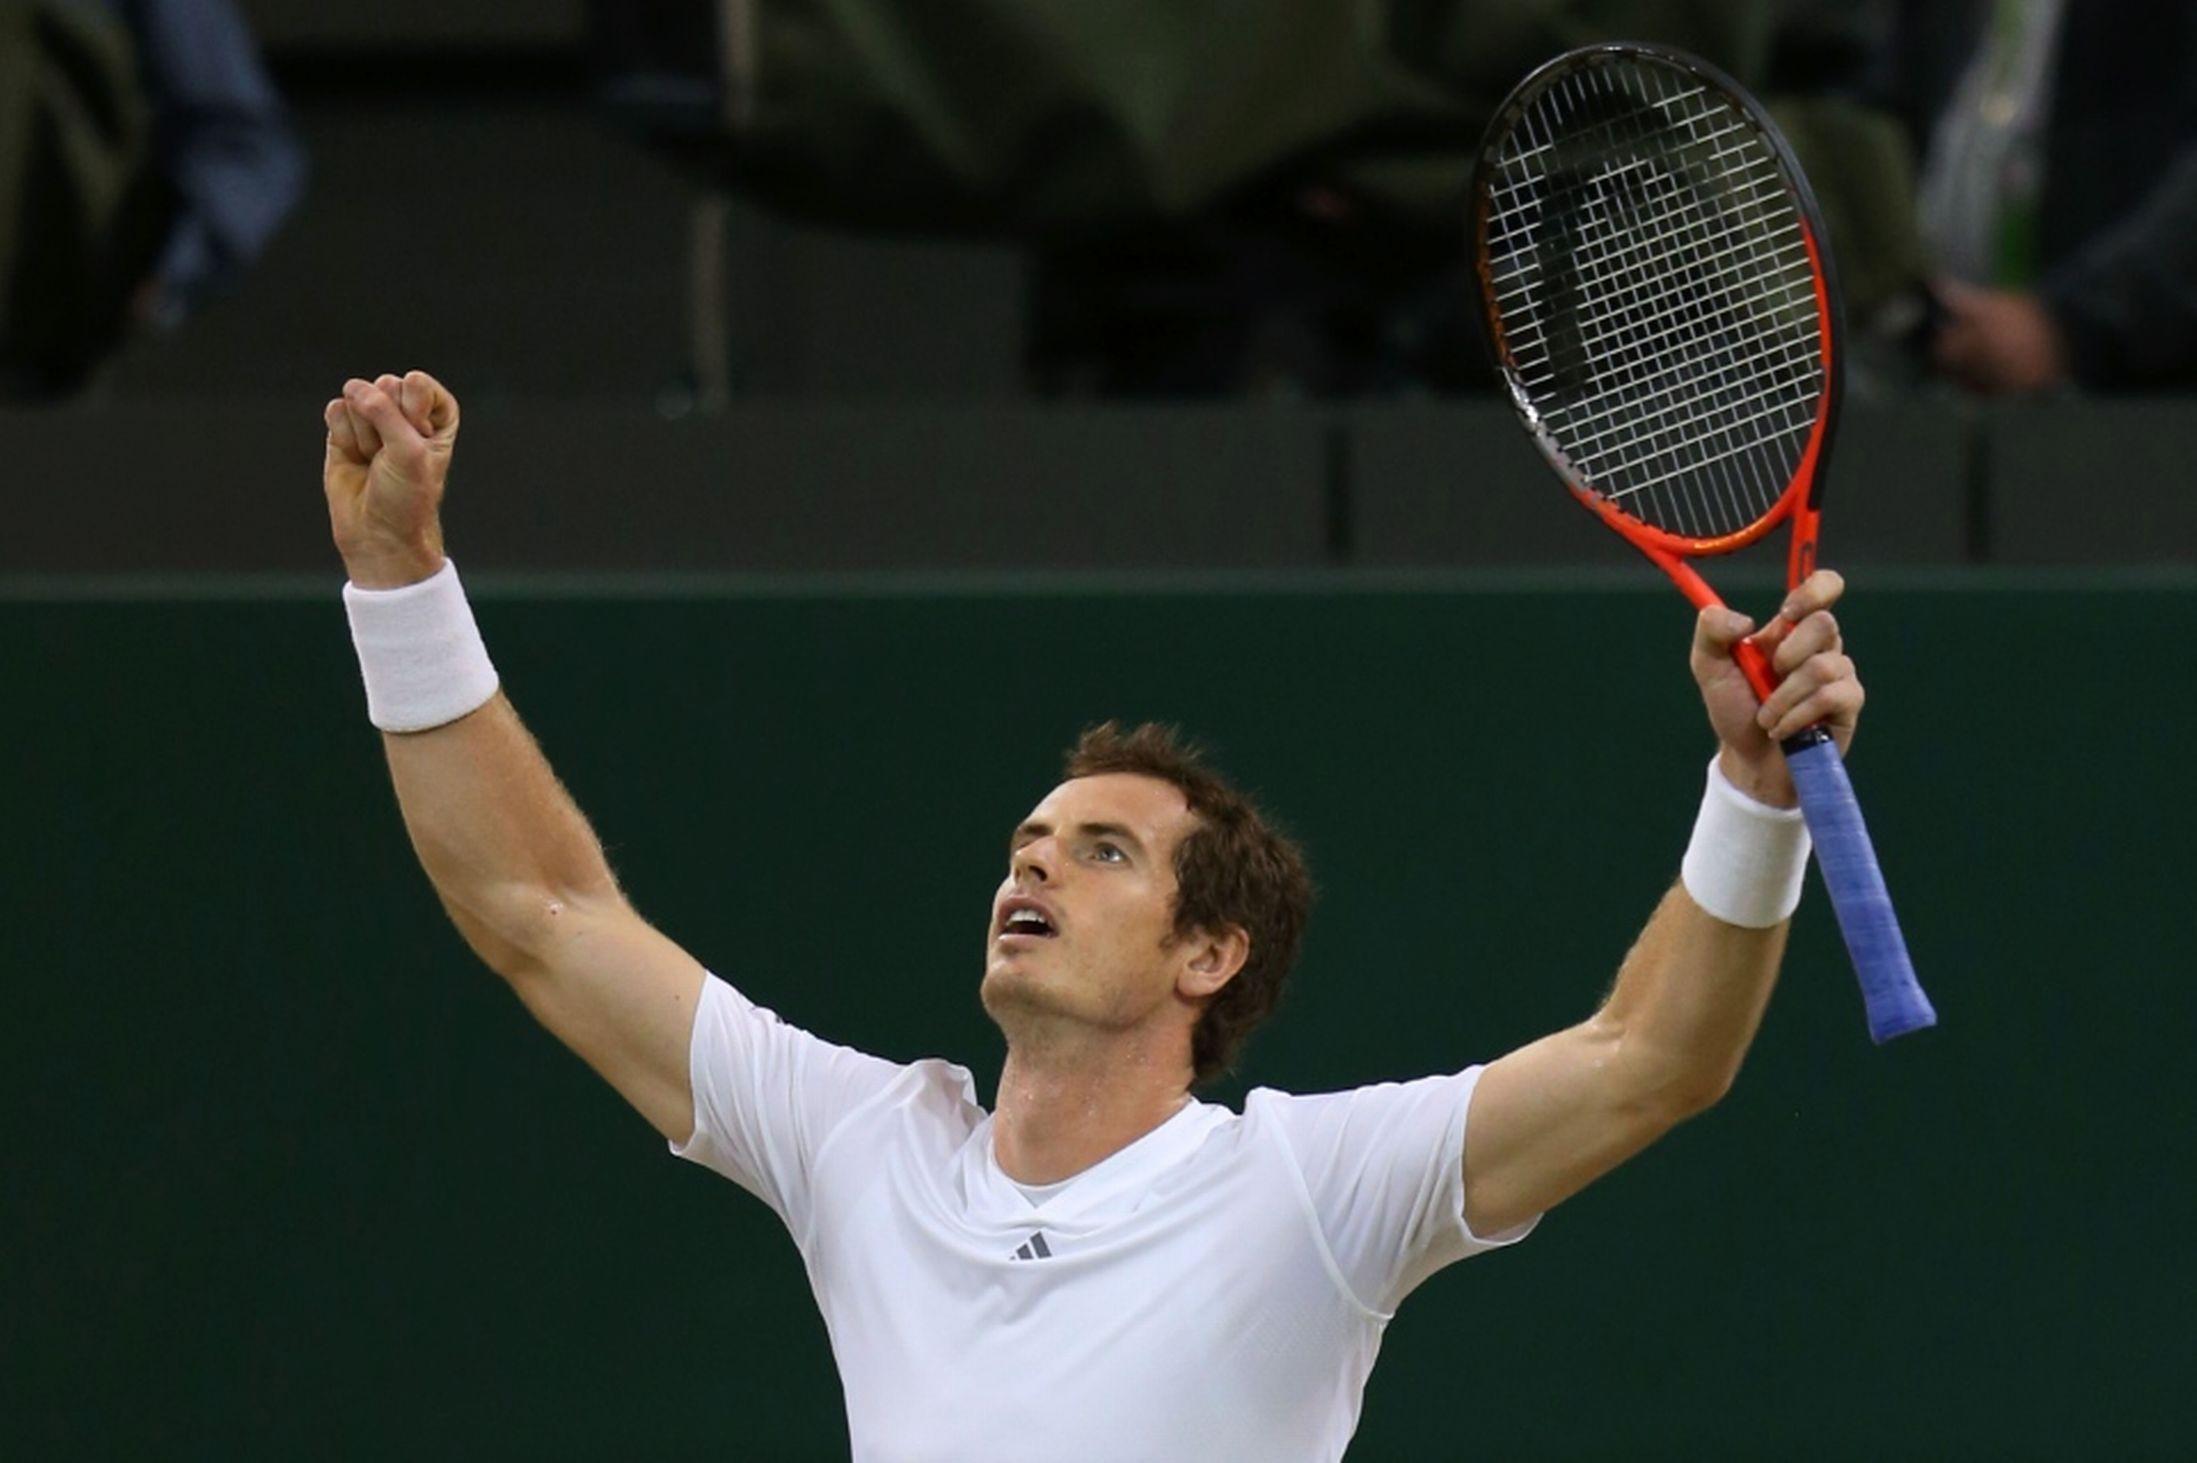 Andy Murray 2013 Wimbledon Final. High Definition Wallpaper